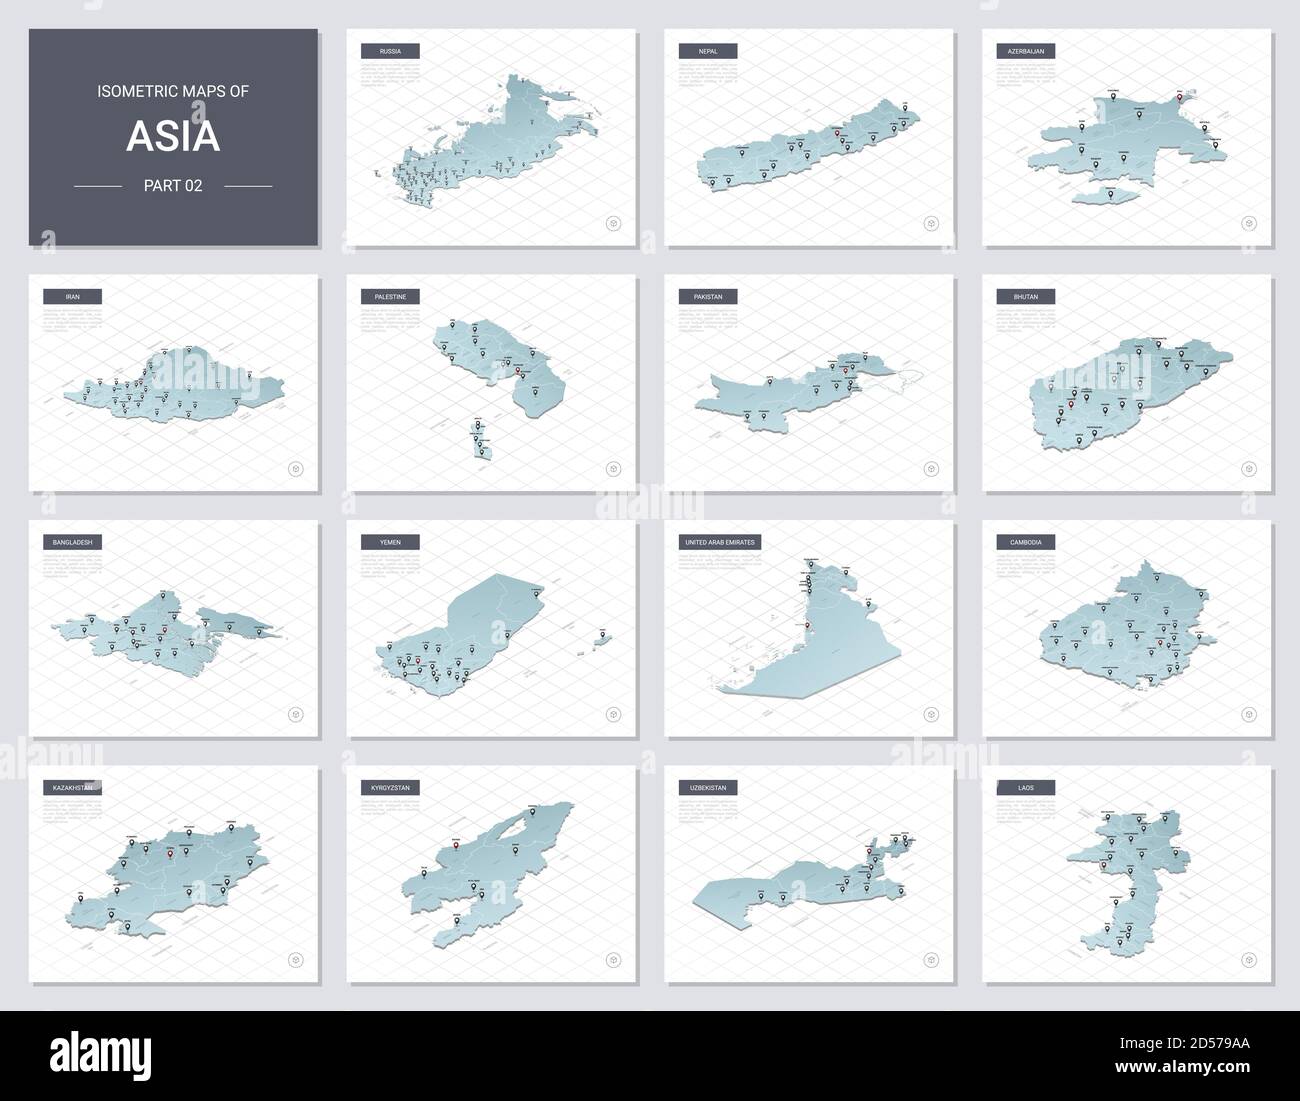 Ensemble de cartes vectorielles isométriques - continent asiatique. Cartes des pays asiatiques avec division administrative et villes. Partie 2. Illustration de Vecteur